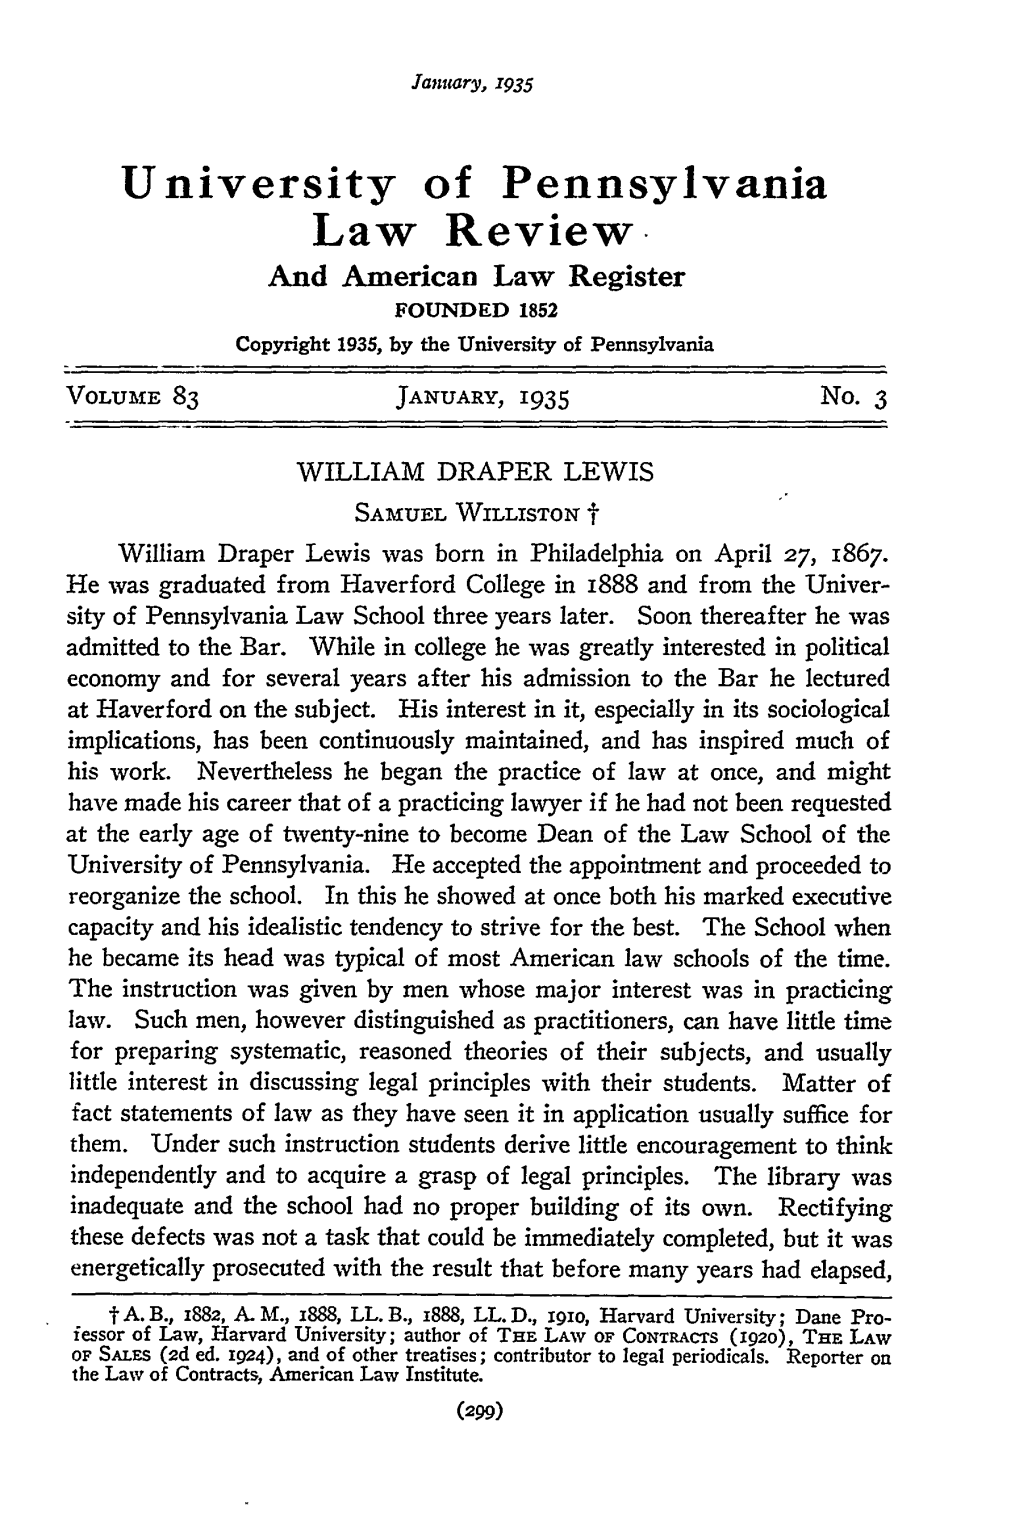 WILLIAM DRAPER LEWIS SAMUEL WILLISTON T William Draper Lewis Was Born in Philadelphia on April 27, 1867